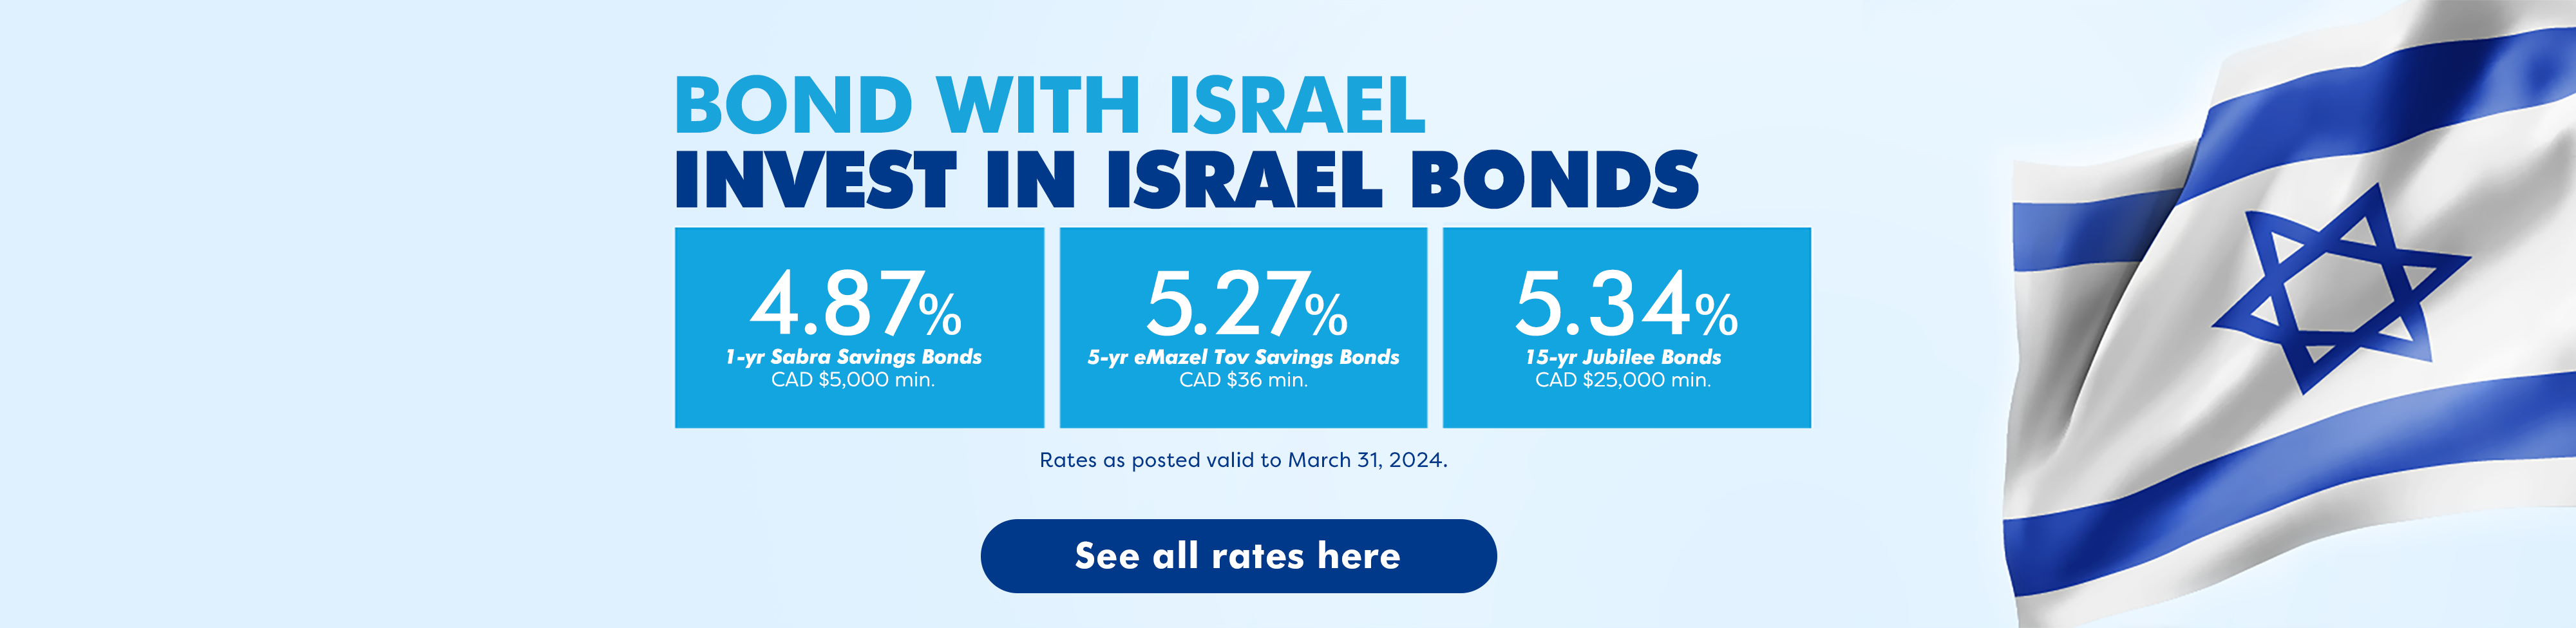 Israel Bonds Rates March 15-31 2024